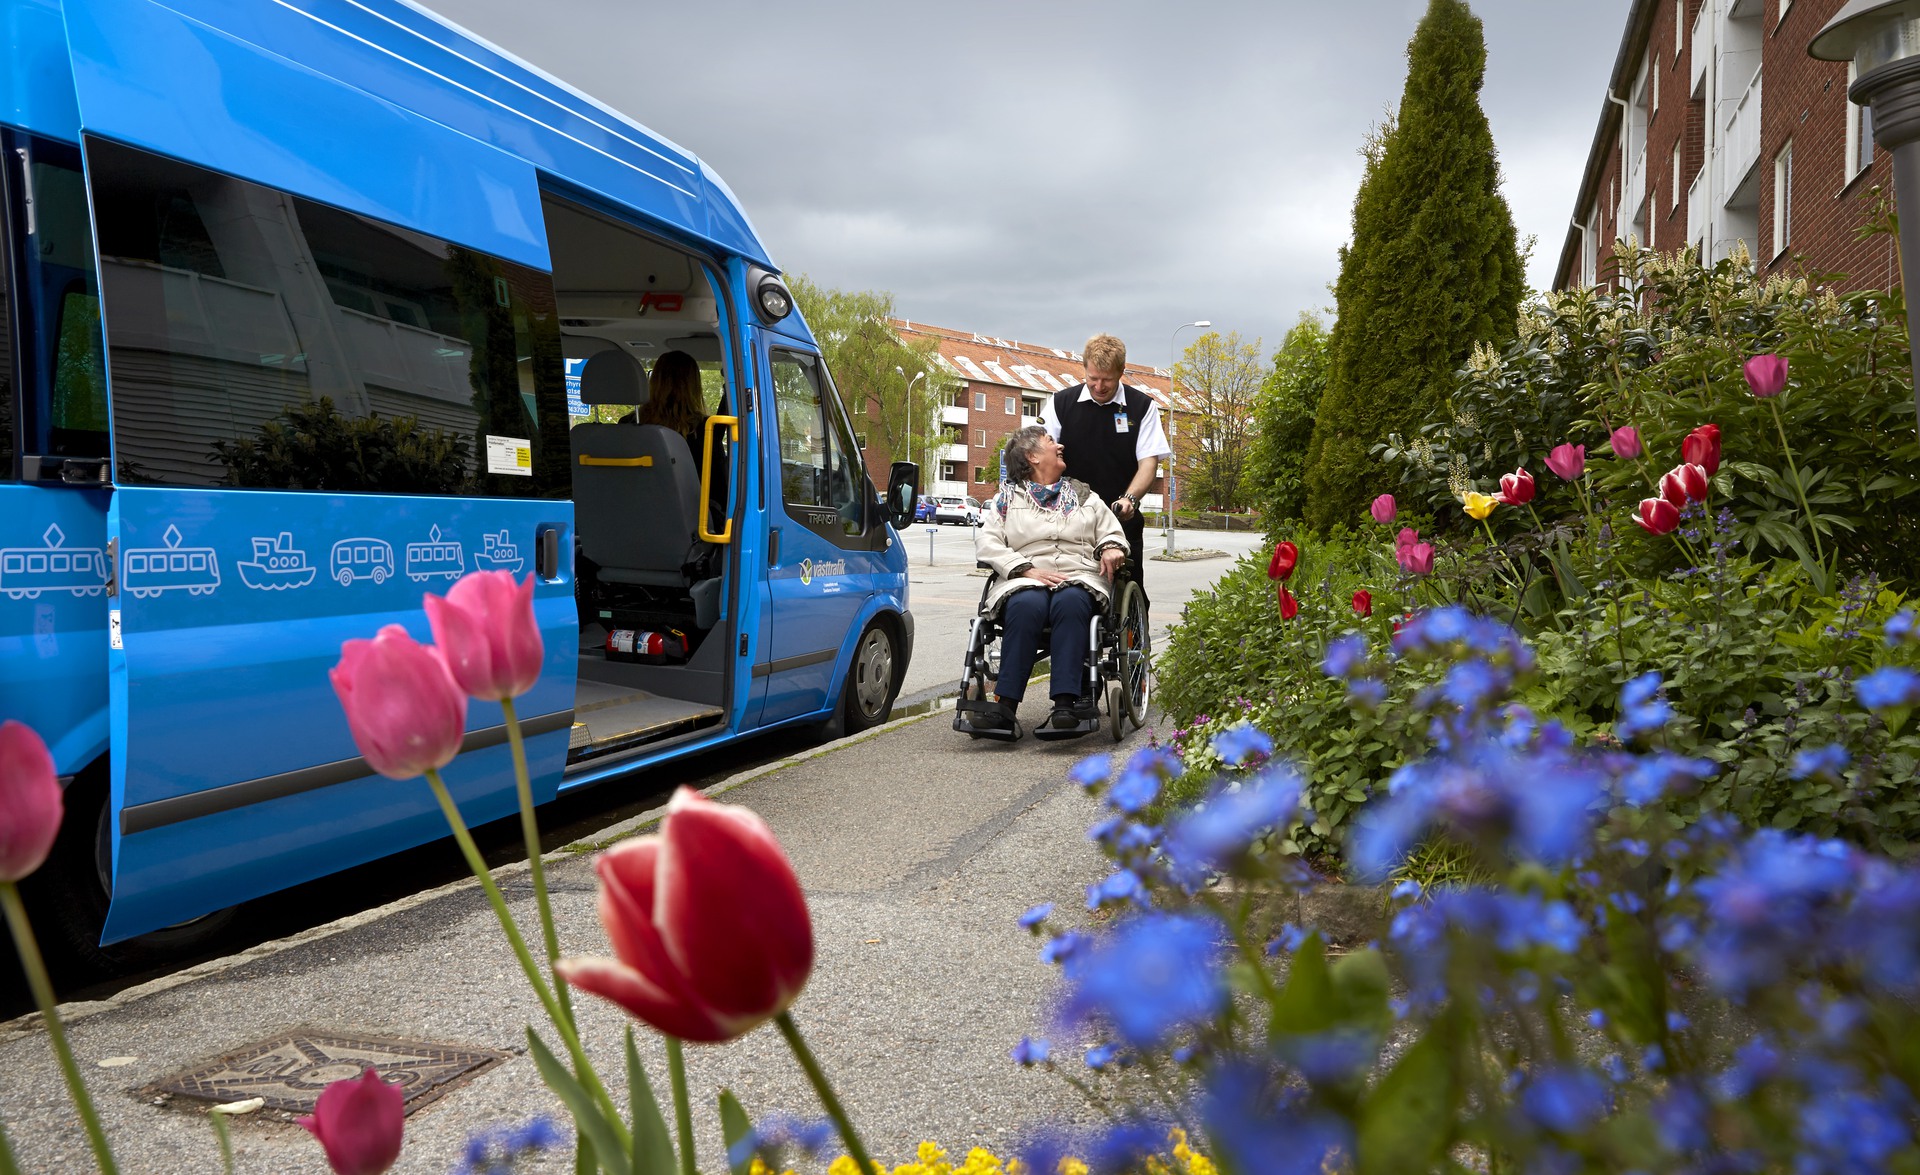 En blå buss är parkerad vid en trottoar, utanförsitter en kvinnlig resenär i rullstol, bakom hennes rygg står en busschaufför som är beredd att hjälpa kvinnan med resan.